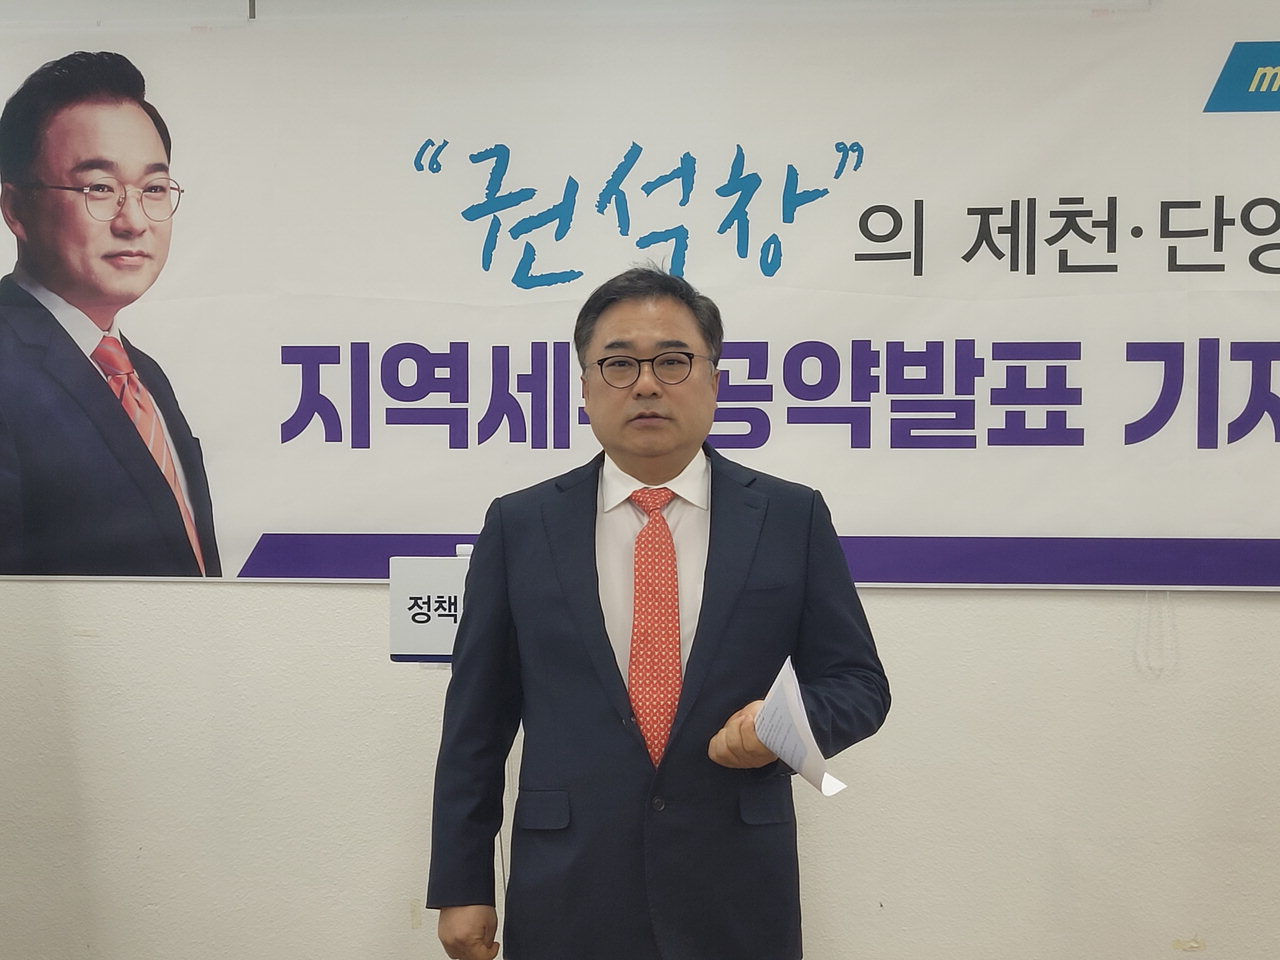 제천지역 세부 공약을 발표하고 있는 권석창 전 국회의원 모습. /정봉길